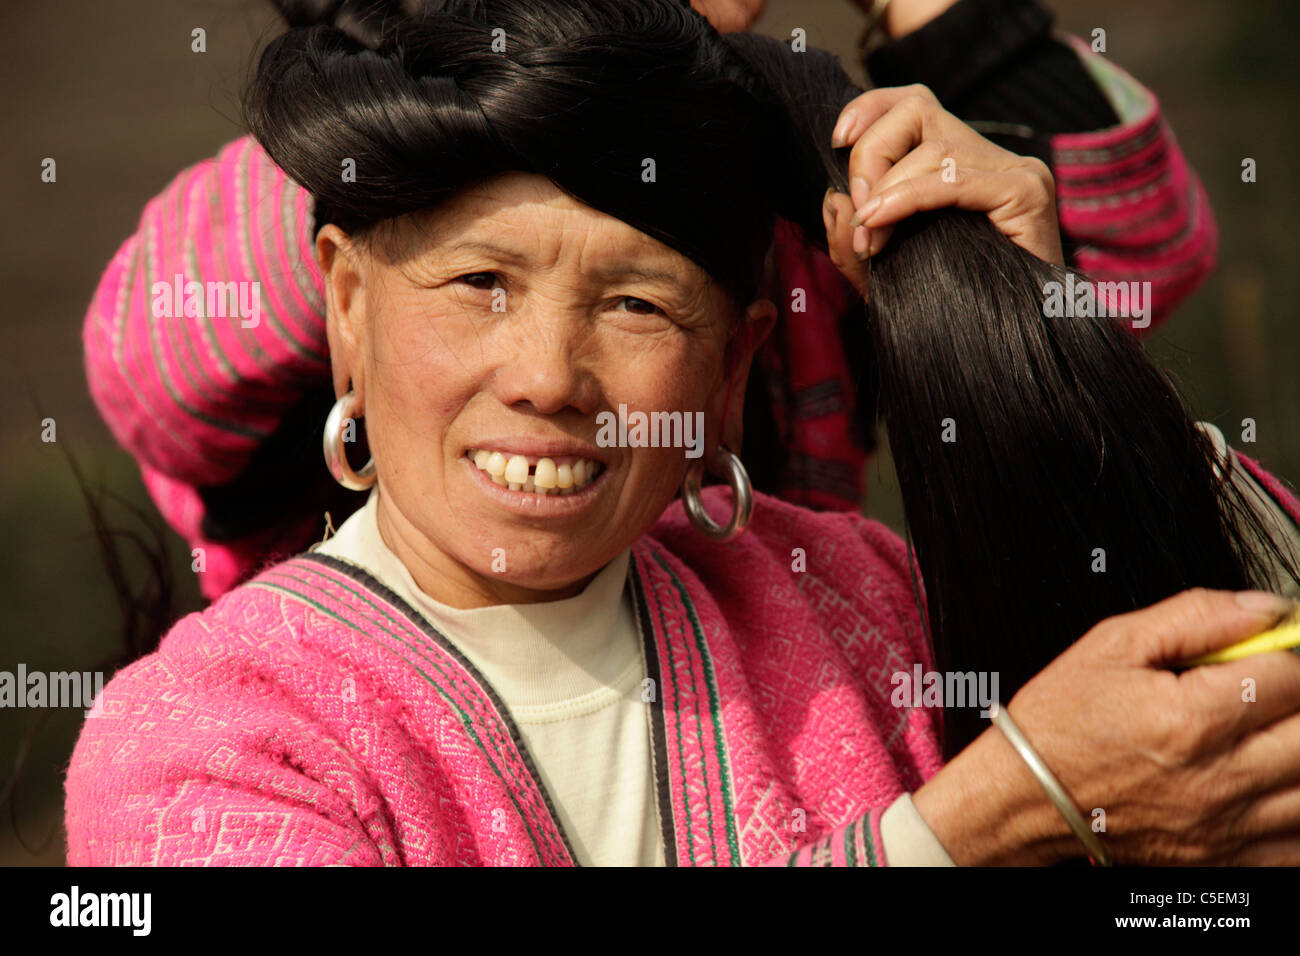 Frauen der Yao-Minderheit mit Trachten und ihre charakteristische Frisur bei Ping eine in der Nähe von Longsheng, Guangxi, China Stockfoto